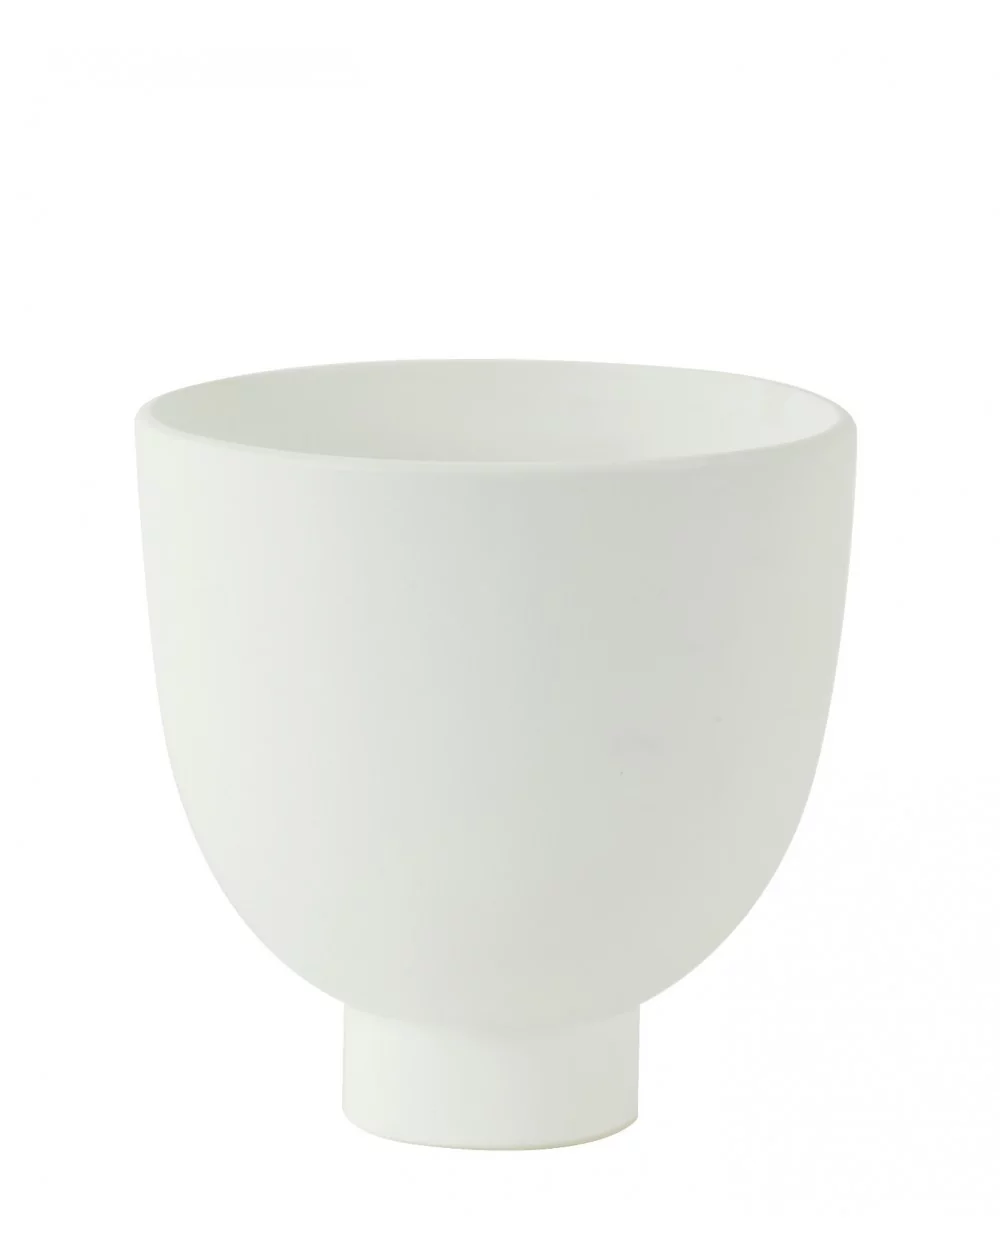 Dekoračná váza/nádoba NUKRI, matt white